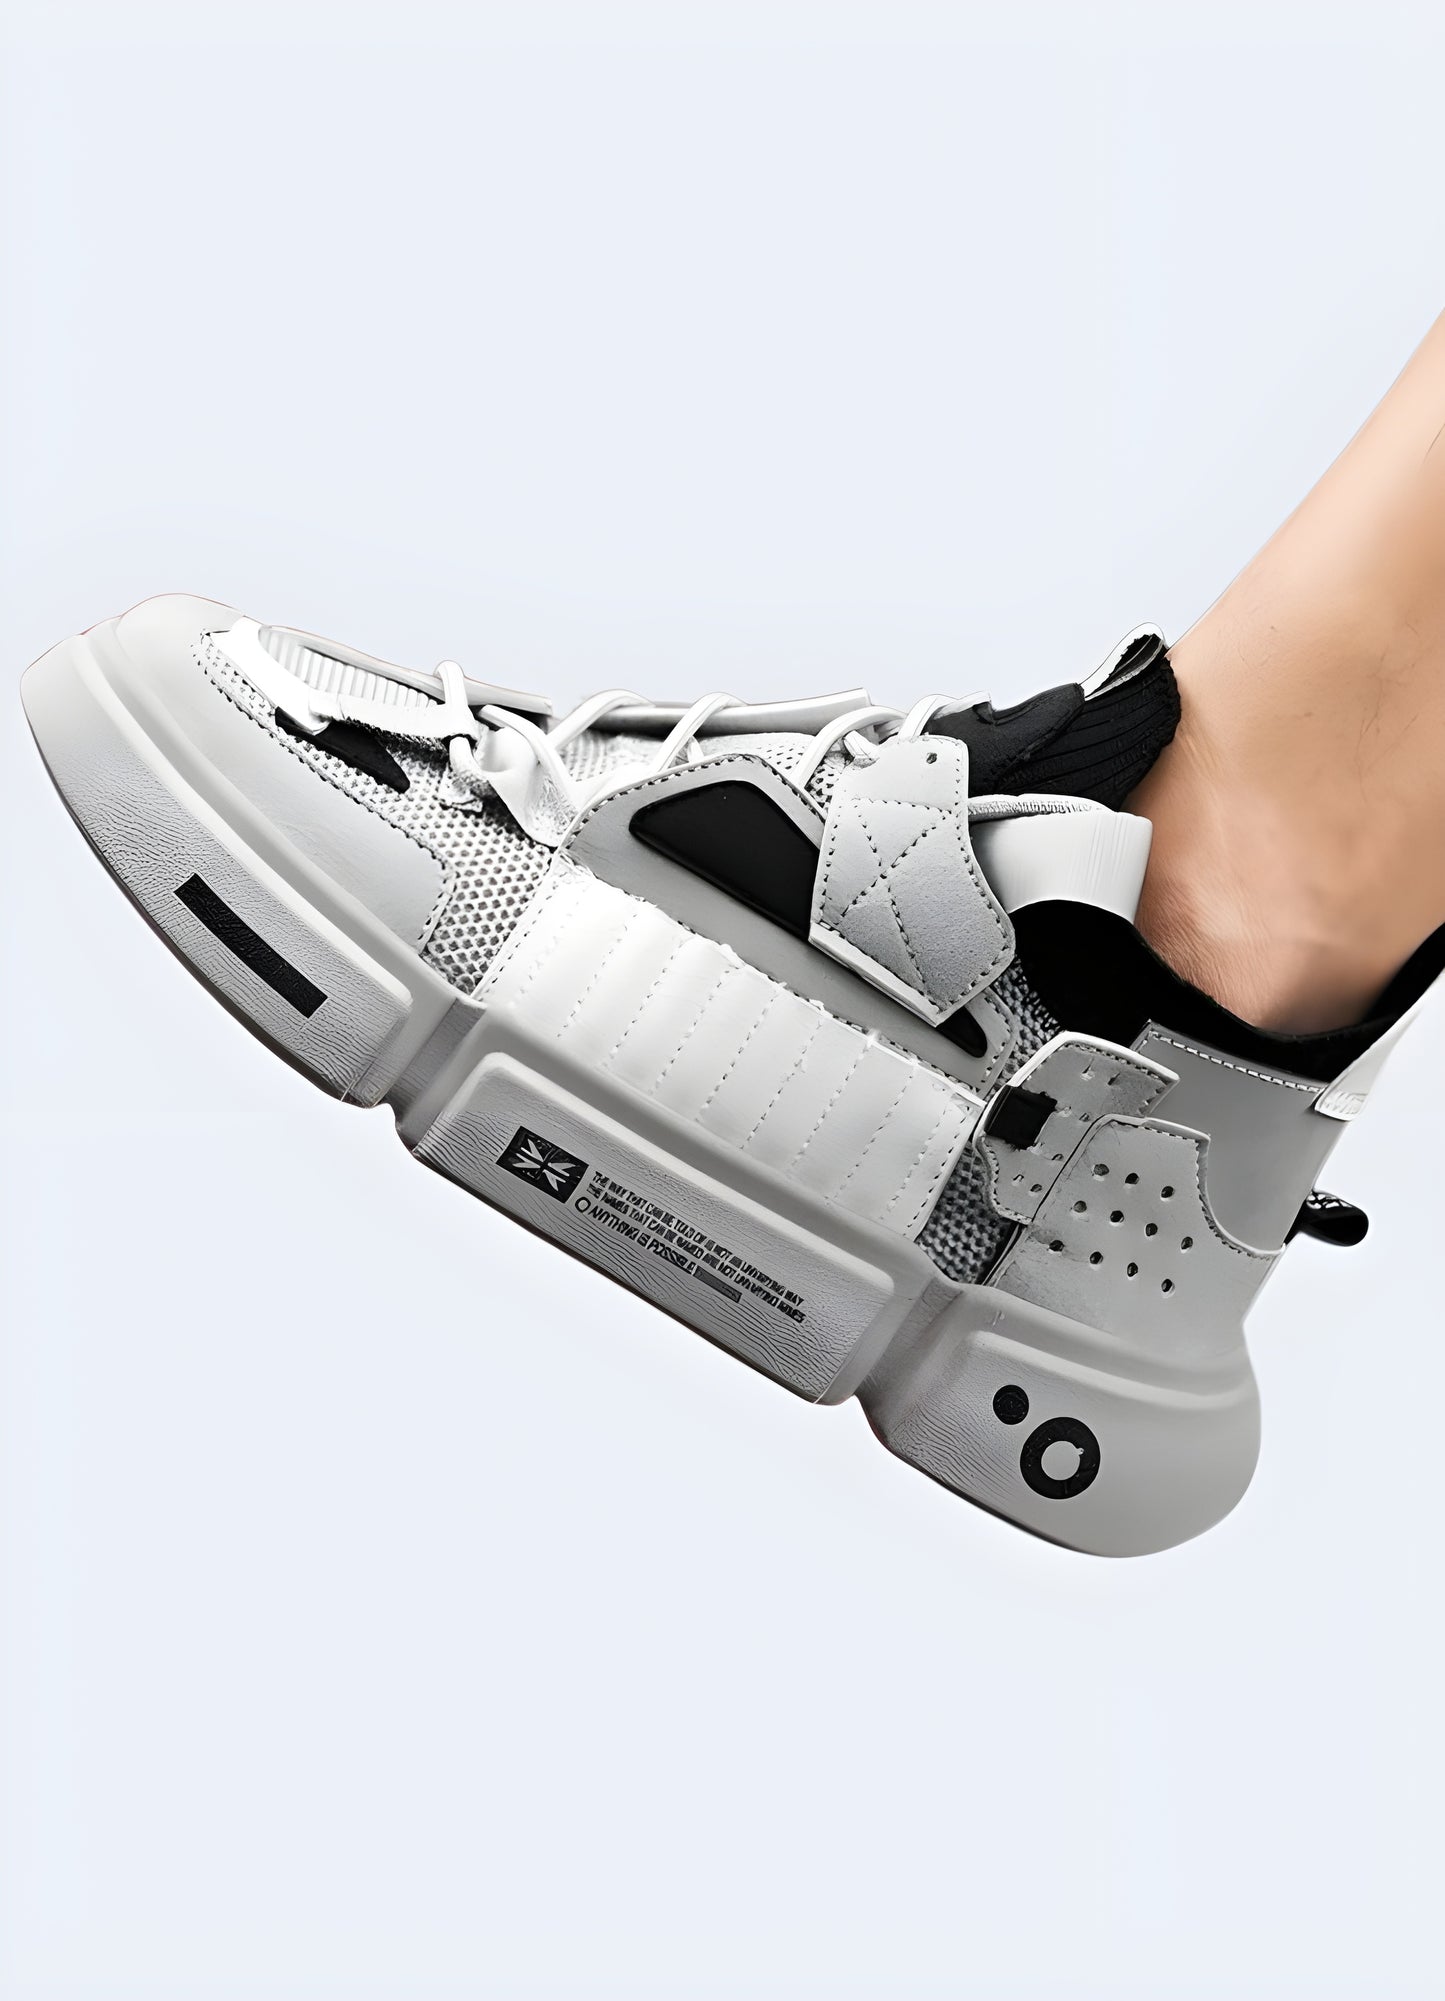 The lunarcore shoes has a unique design of lunarcore shoes that truly sets them apart.